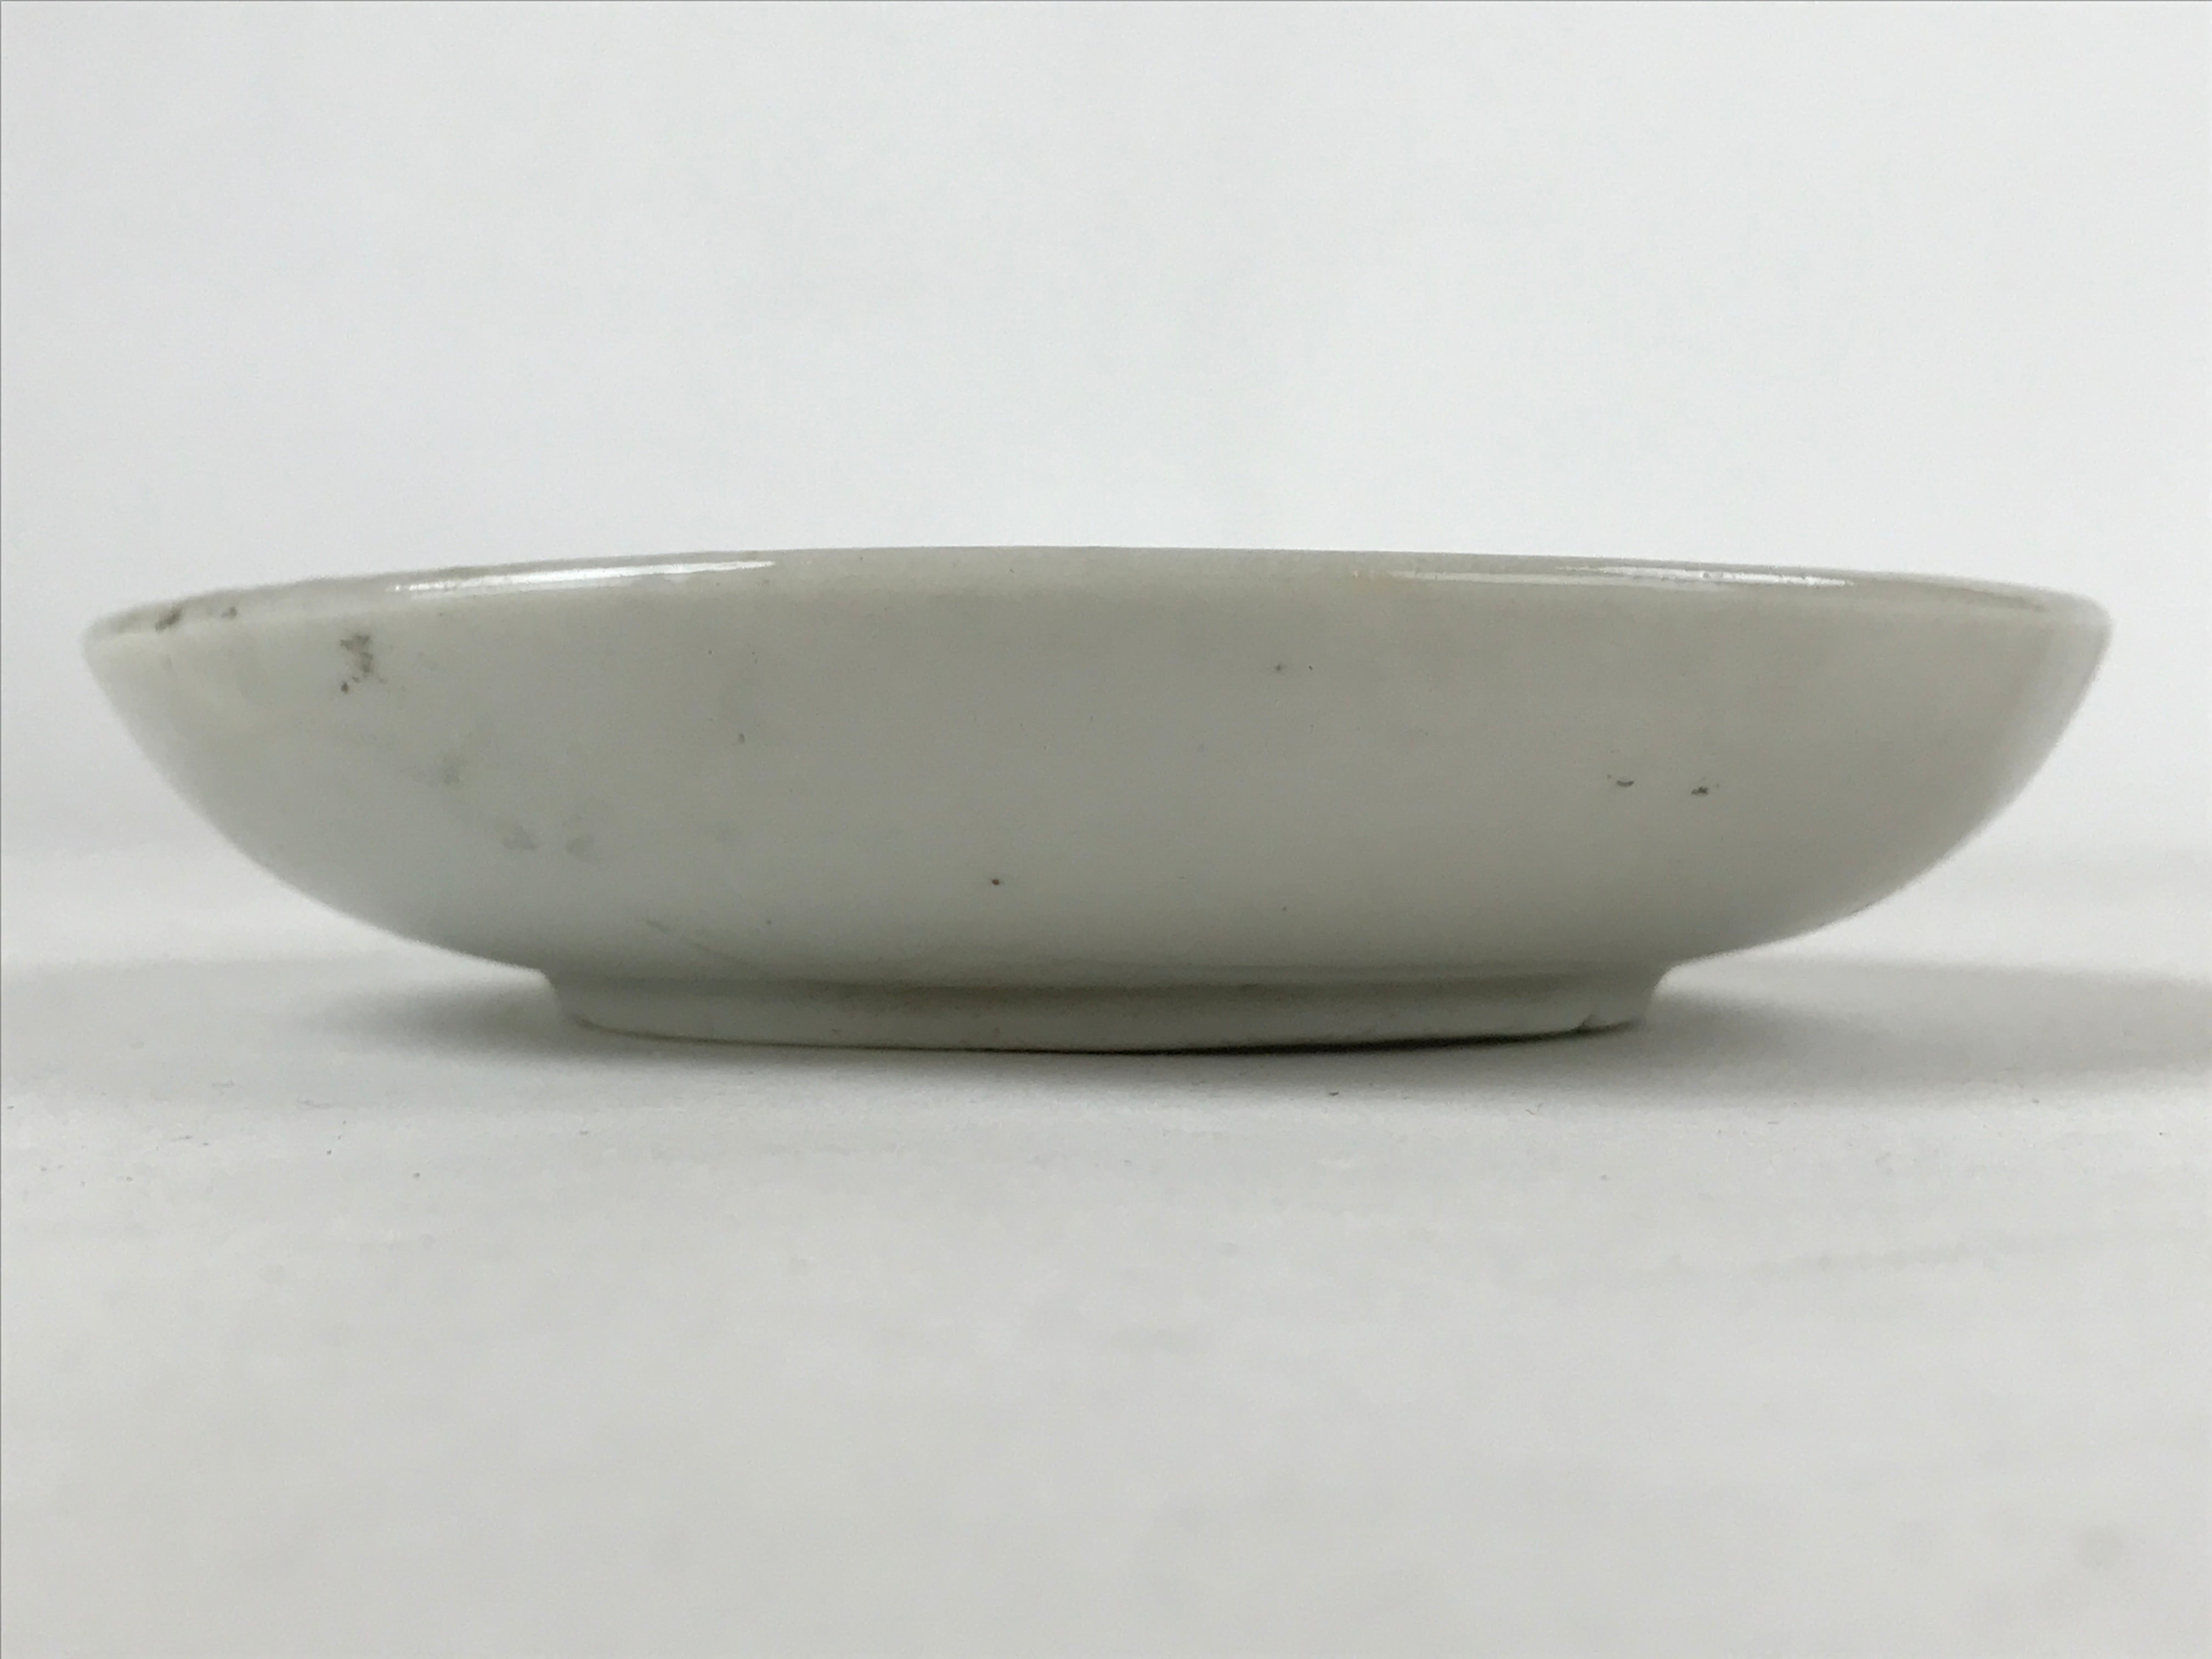 Antique Japanese Ceramic Small Plate Meimeizara Plum Blossom Floral White PY570